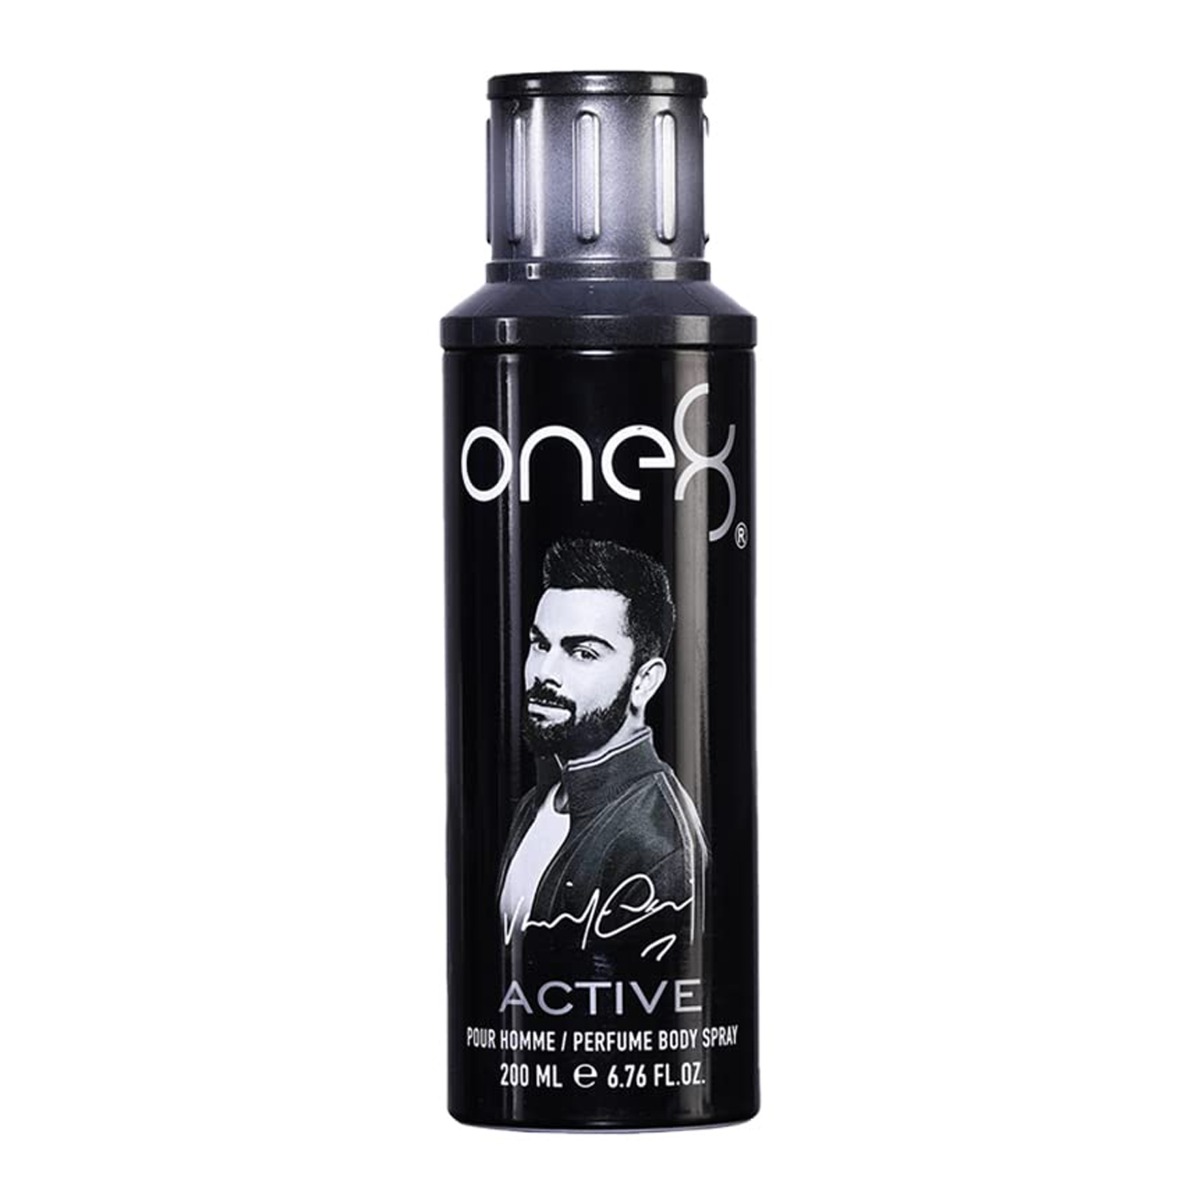 One8 By Virat Kohli Active Perfume Body Spray, 200ml